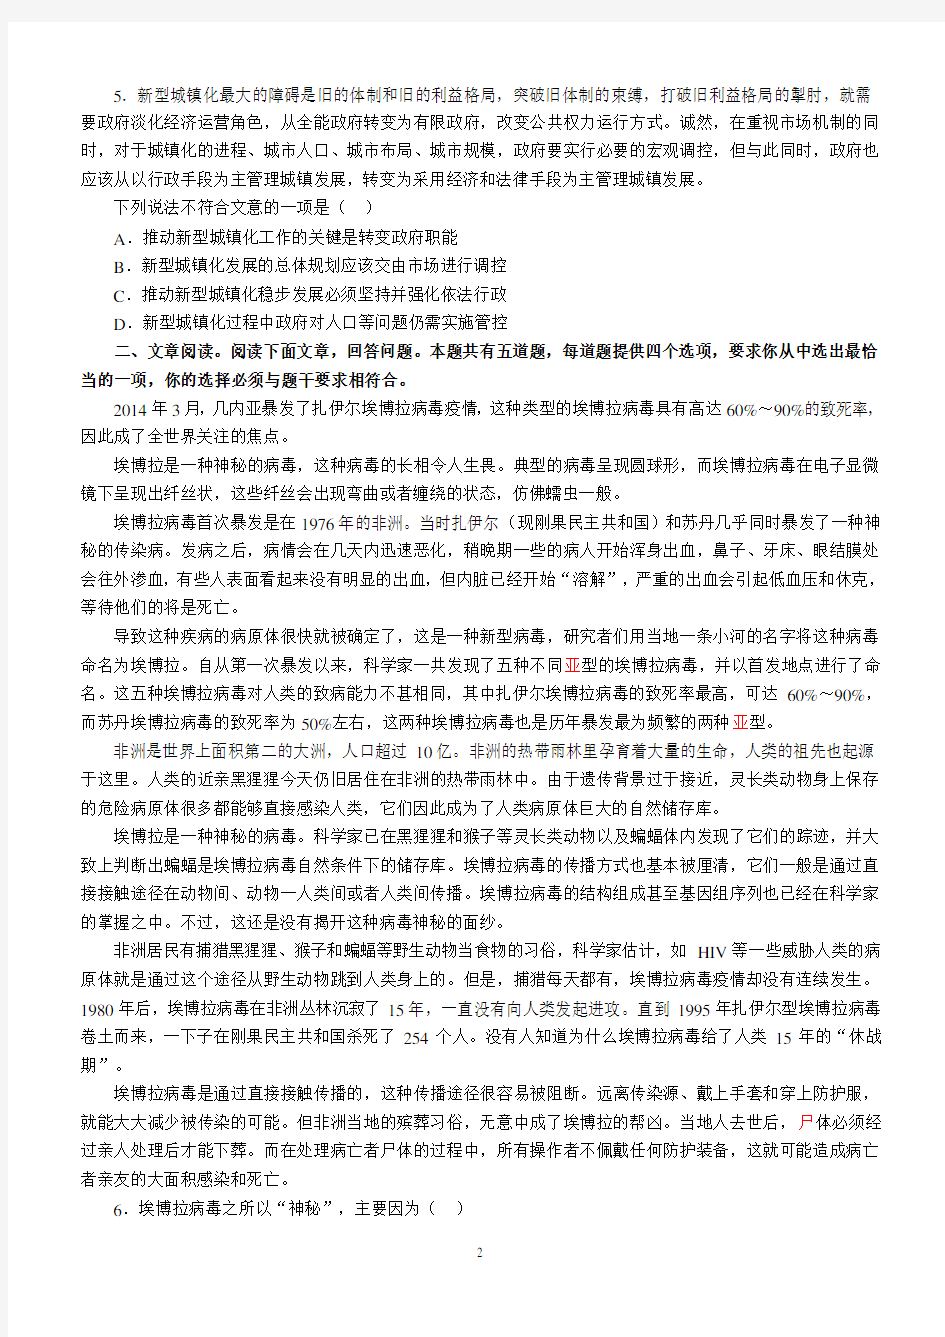 2015年江苏省录用公务员考试行测C类真题卷及答案